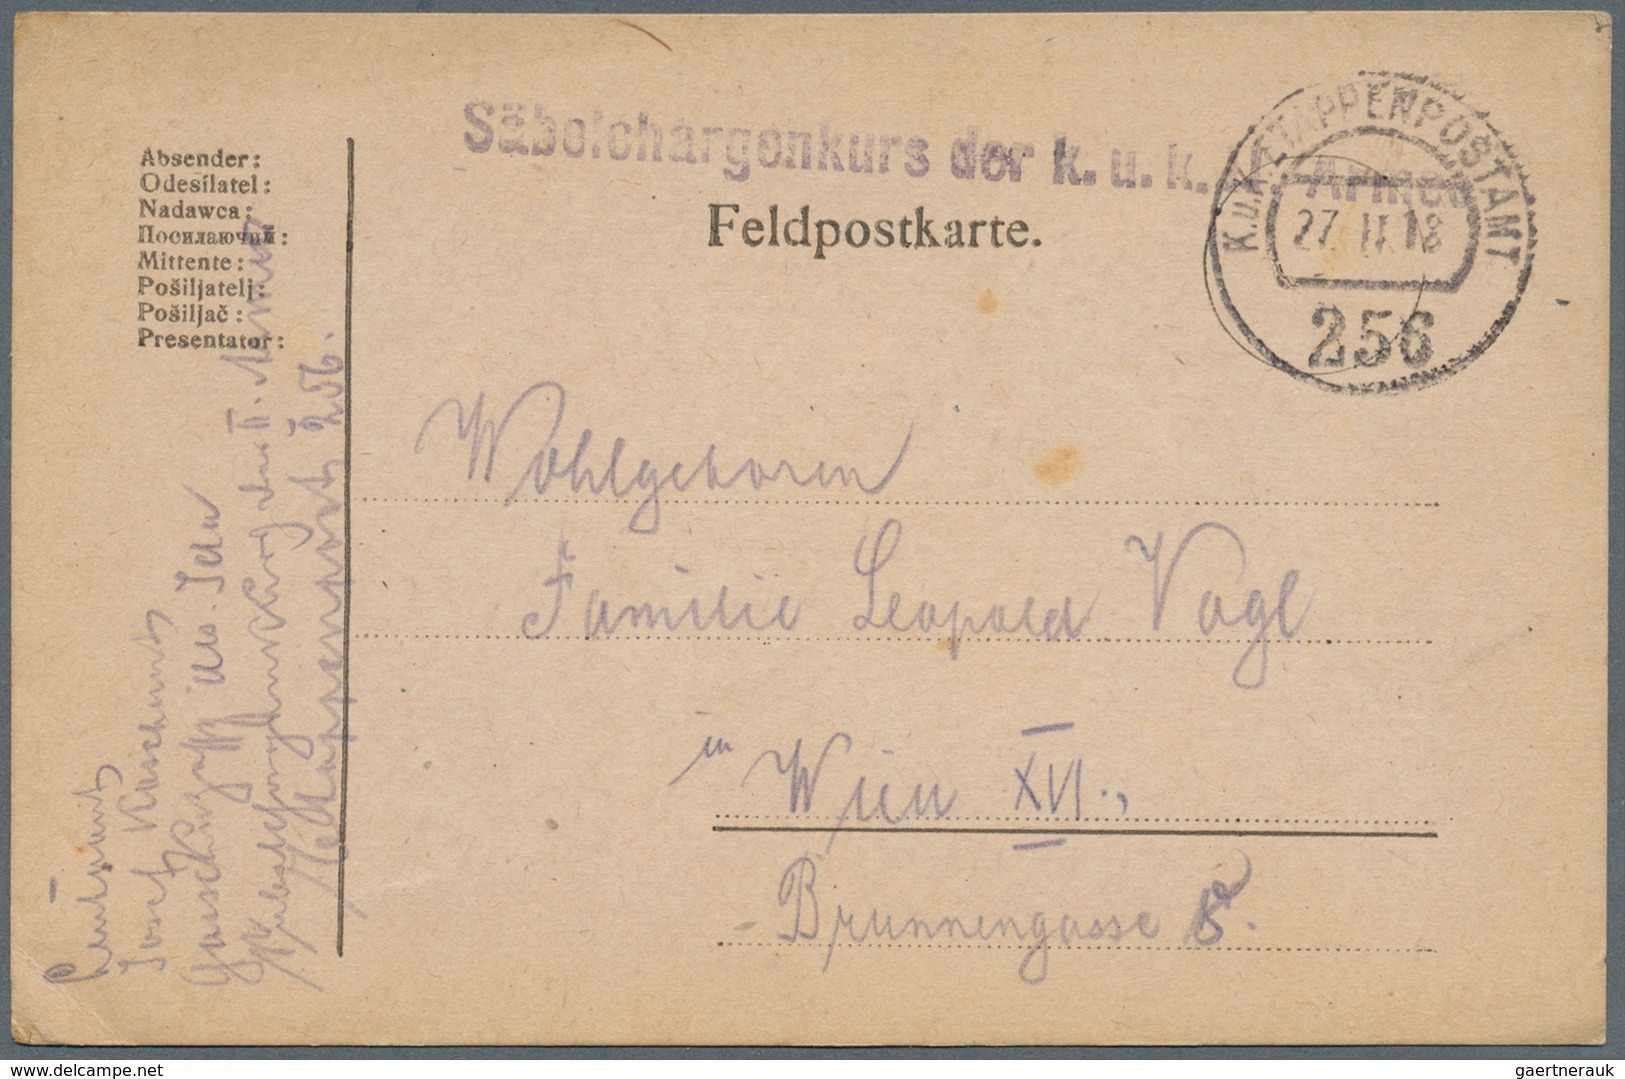 Österreich - Militärpost / Feldpost: 1820/1918, hochinteressante Partie von ca. 125 Briefen/Karten,